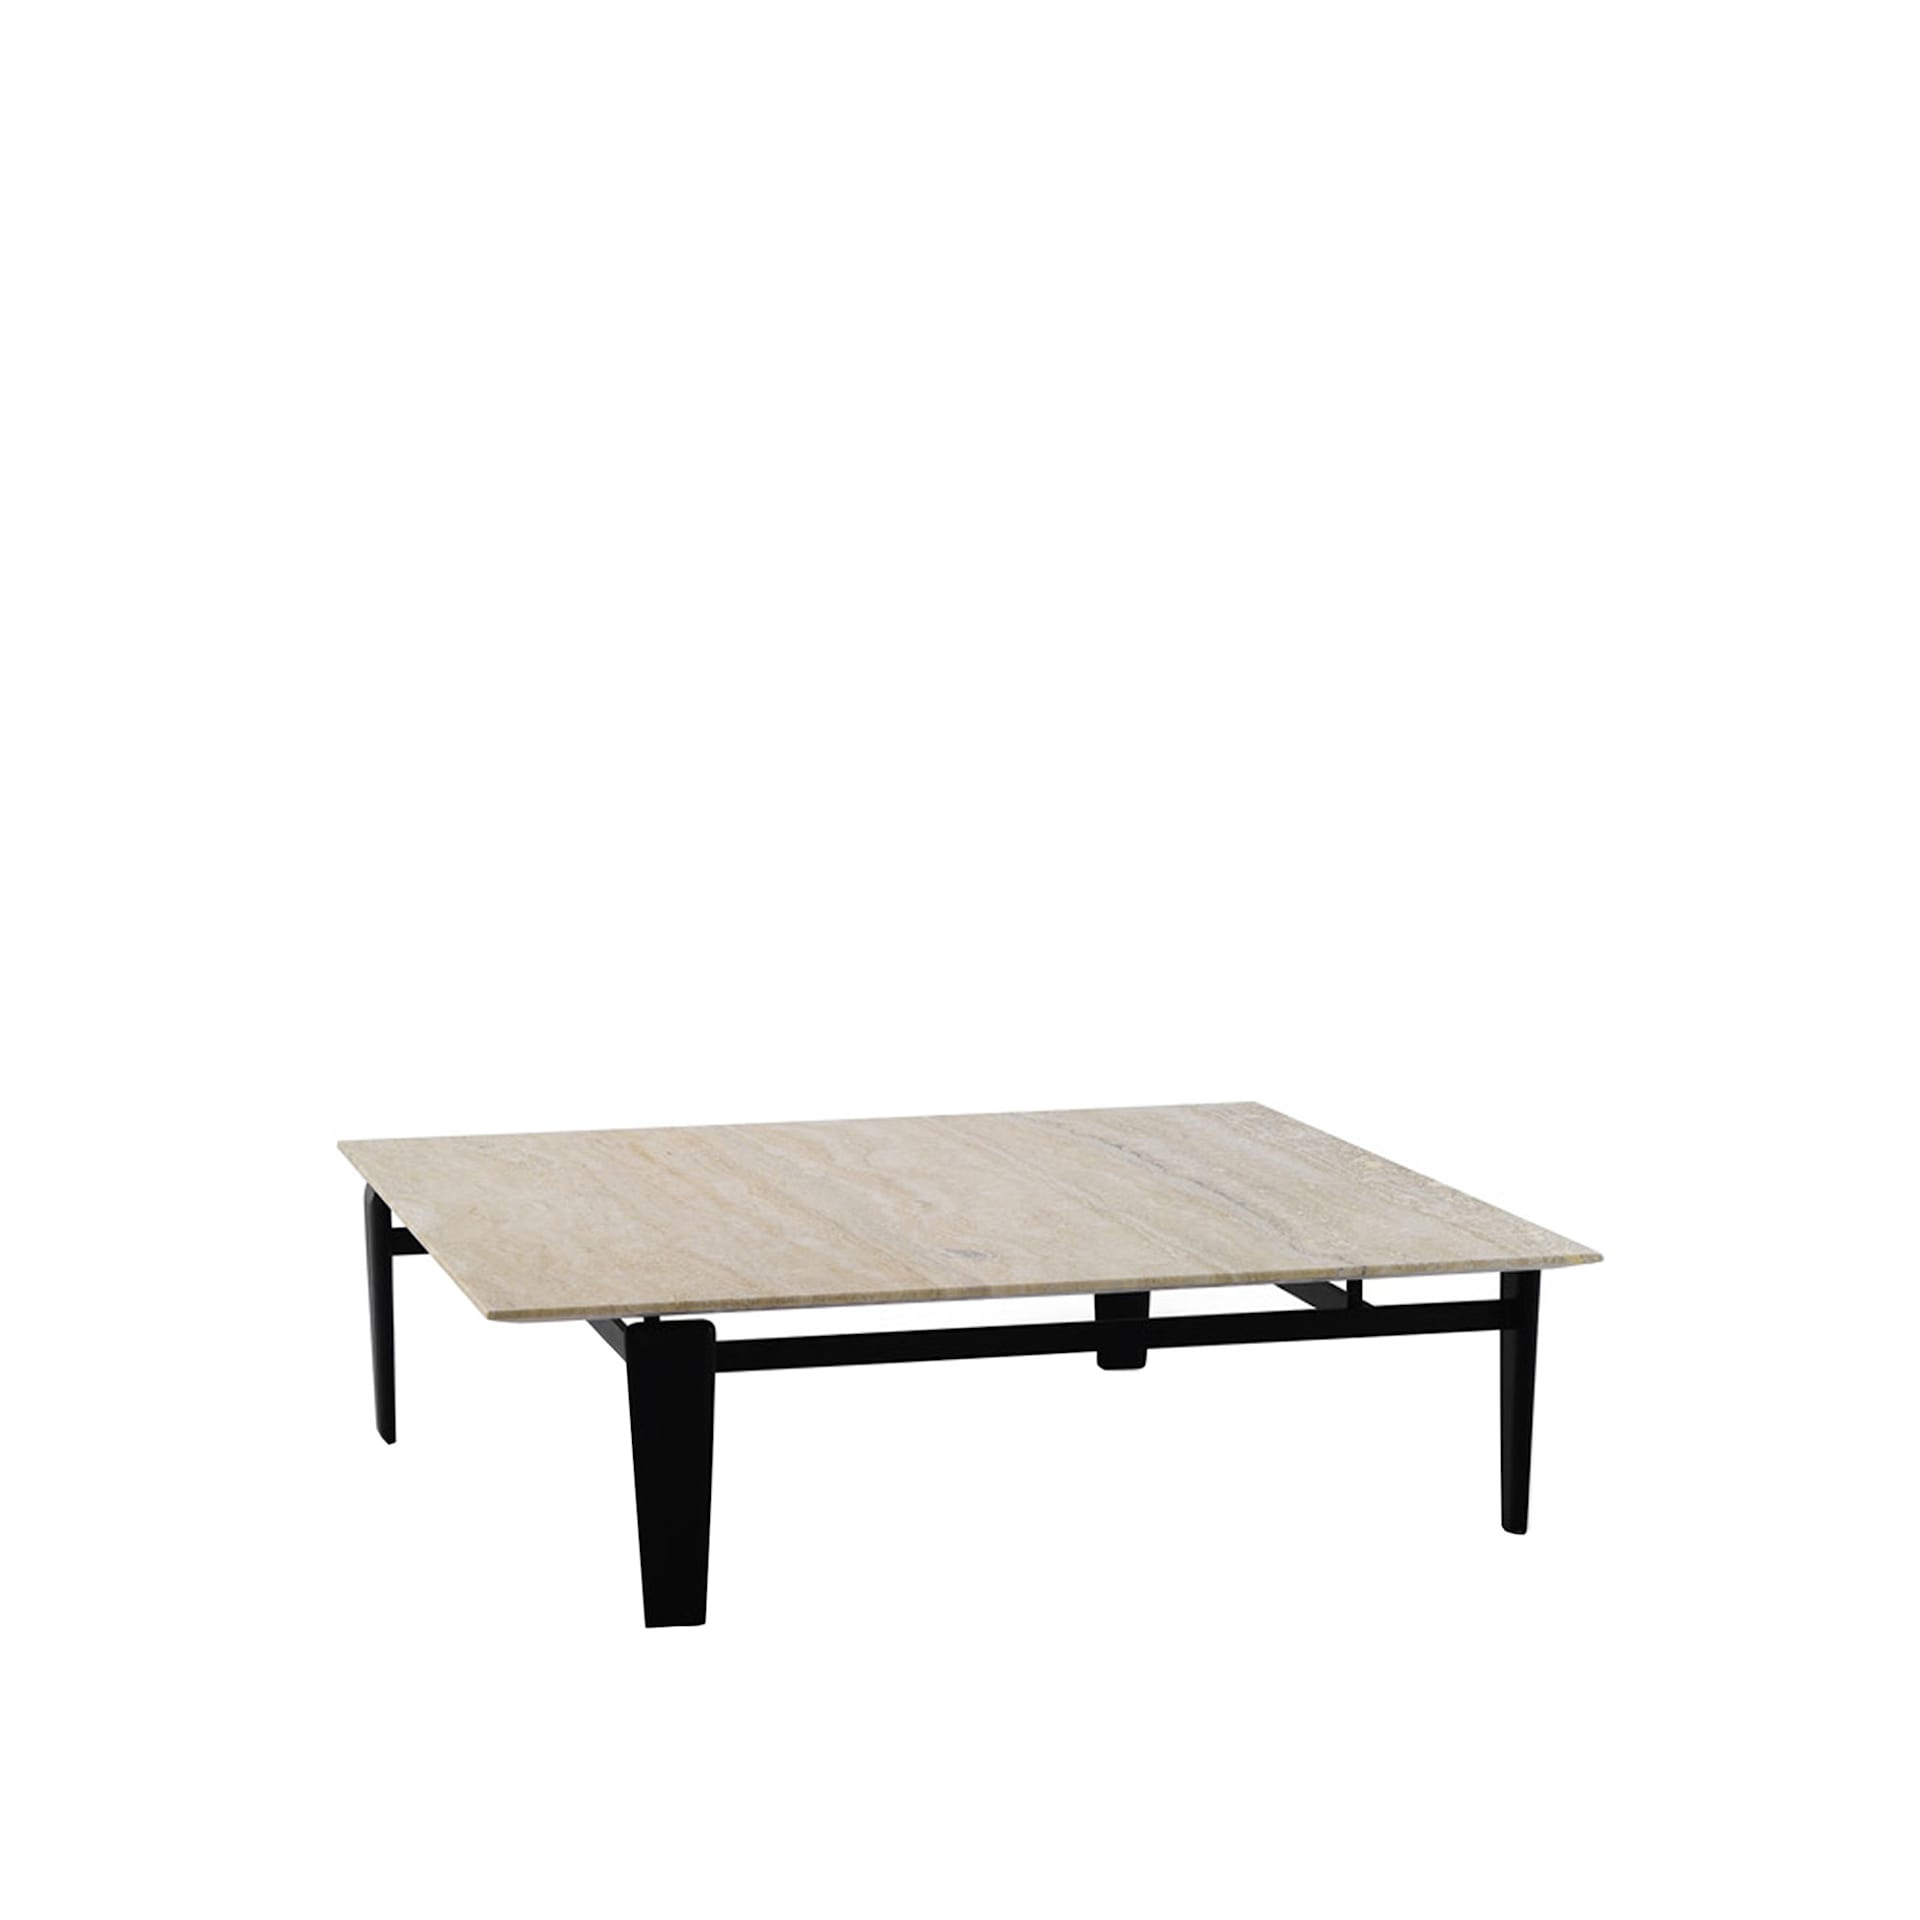 Tablet Small Table 109 x 109 cm - Arflex - Claesson Koivisto Rune - NO GA